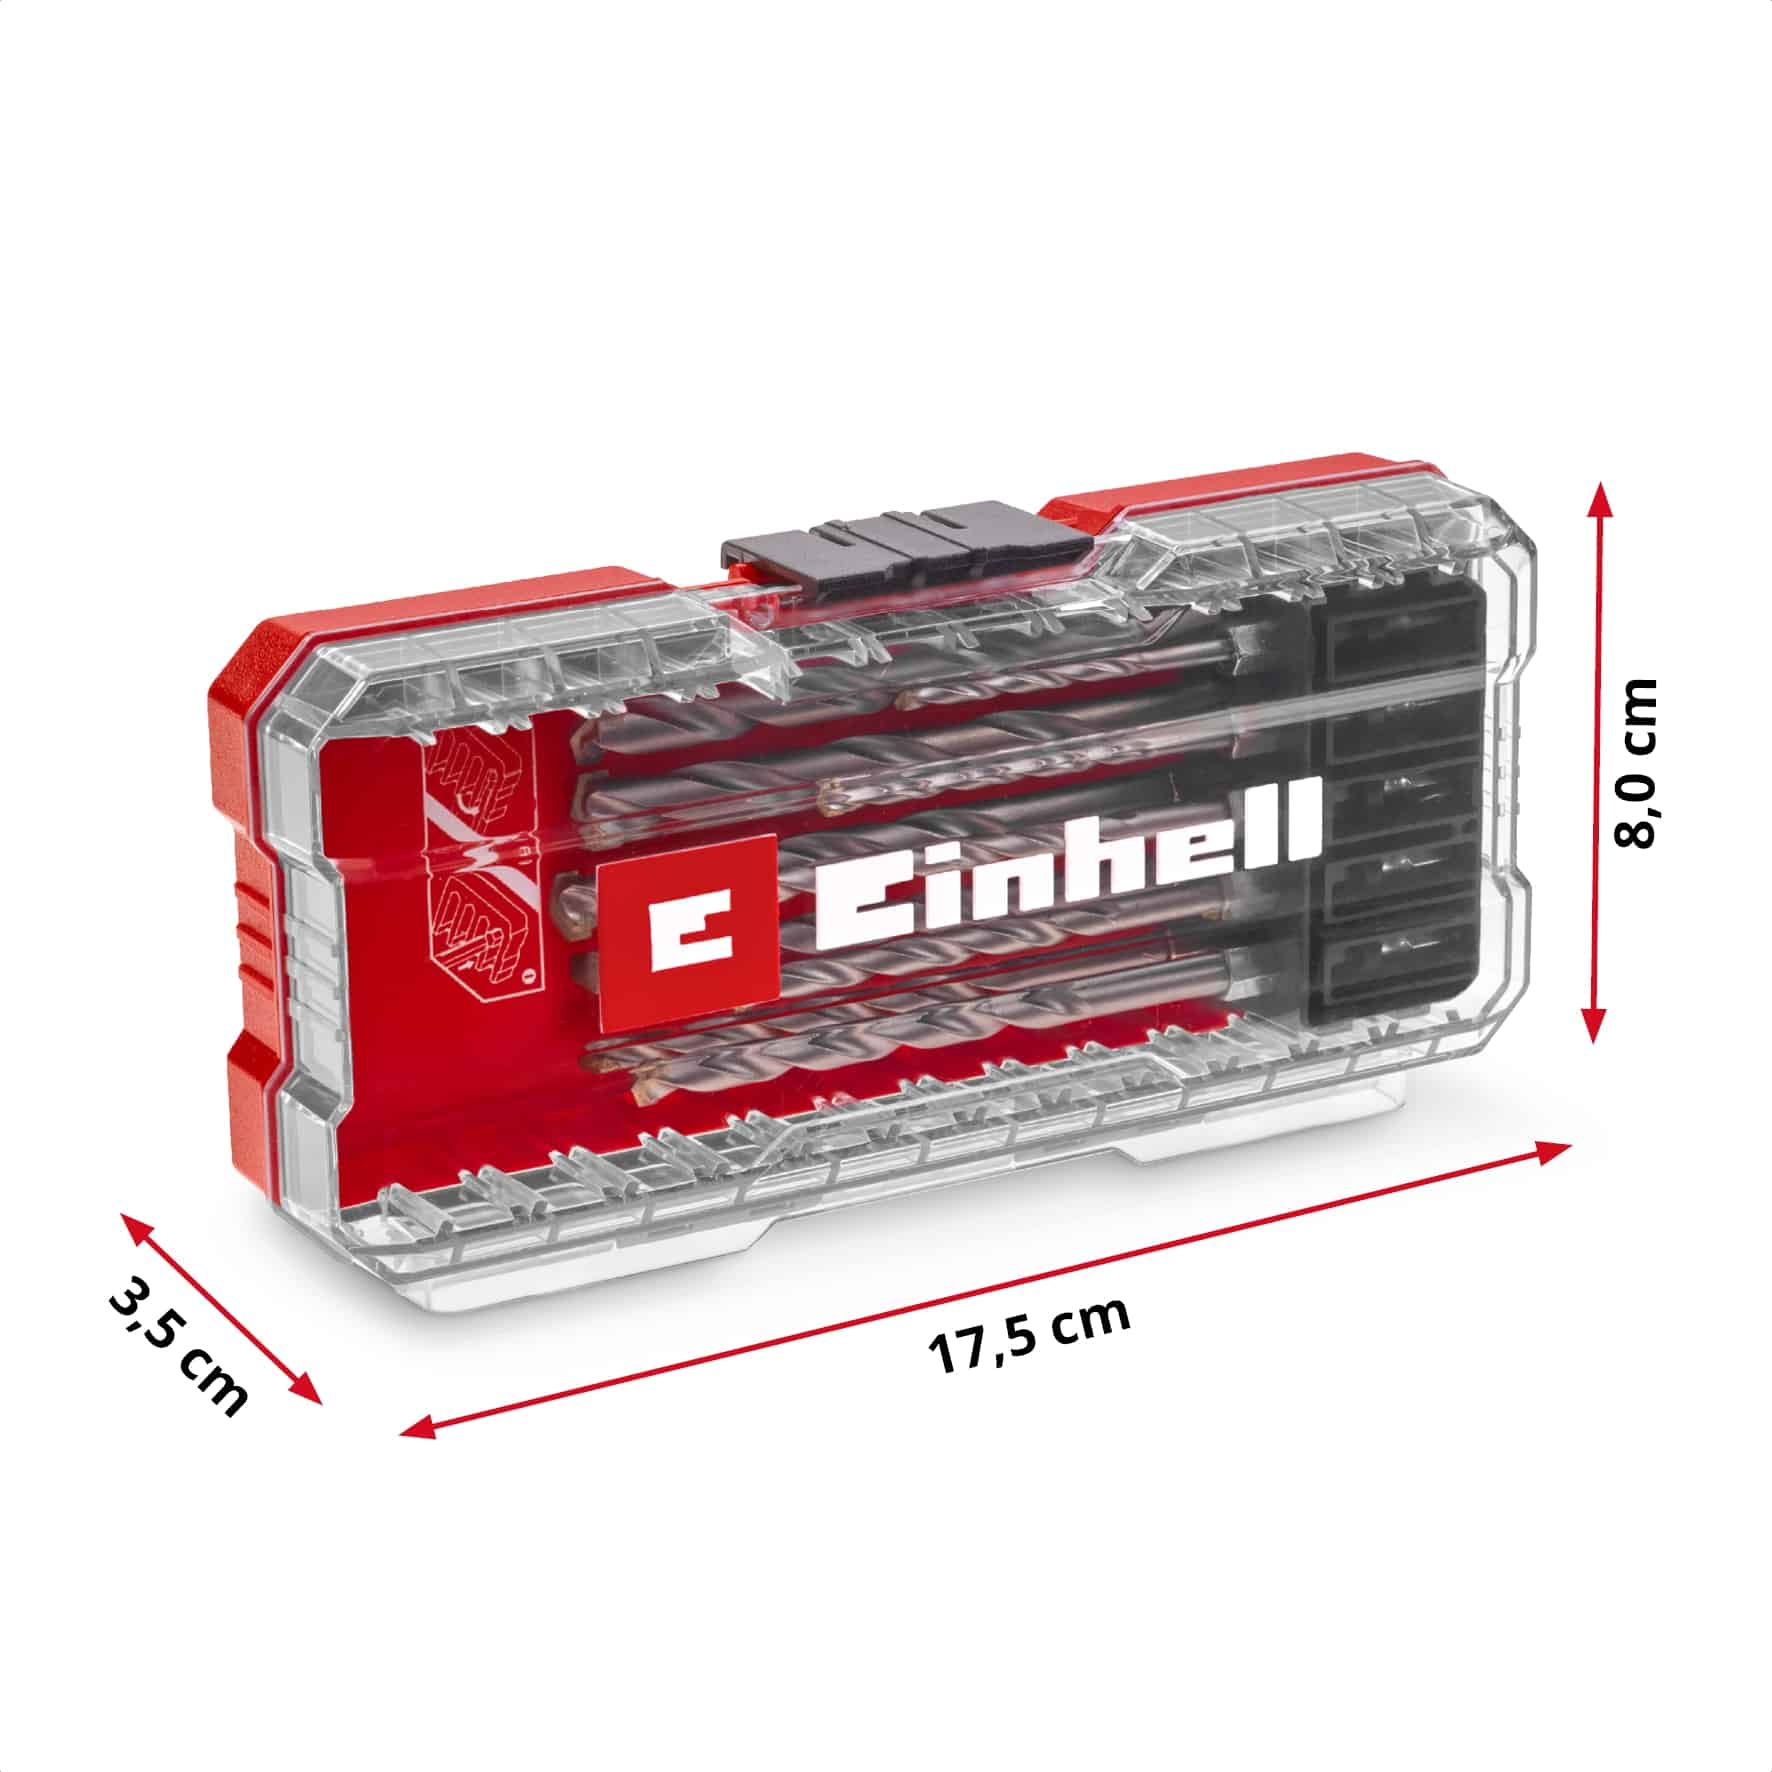 EINHELL Steinbohrer-Set, 108743, S-Case, 10-teilig